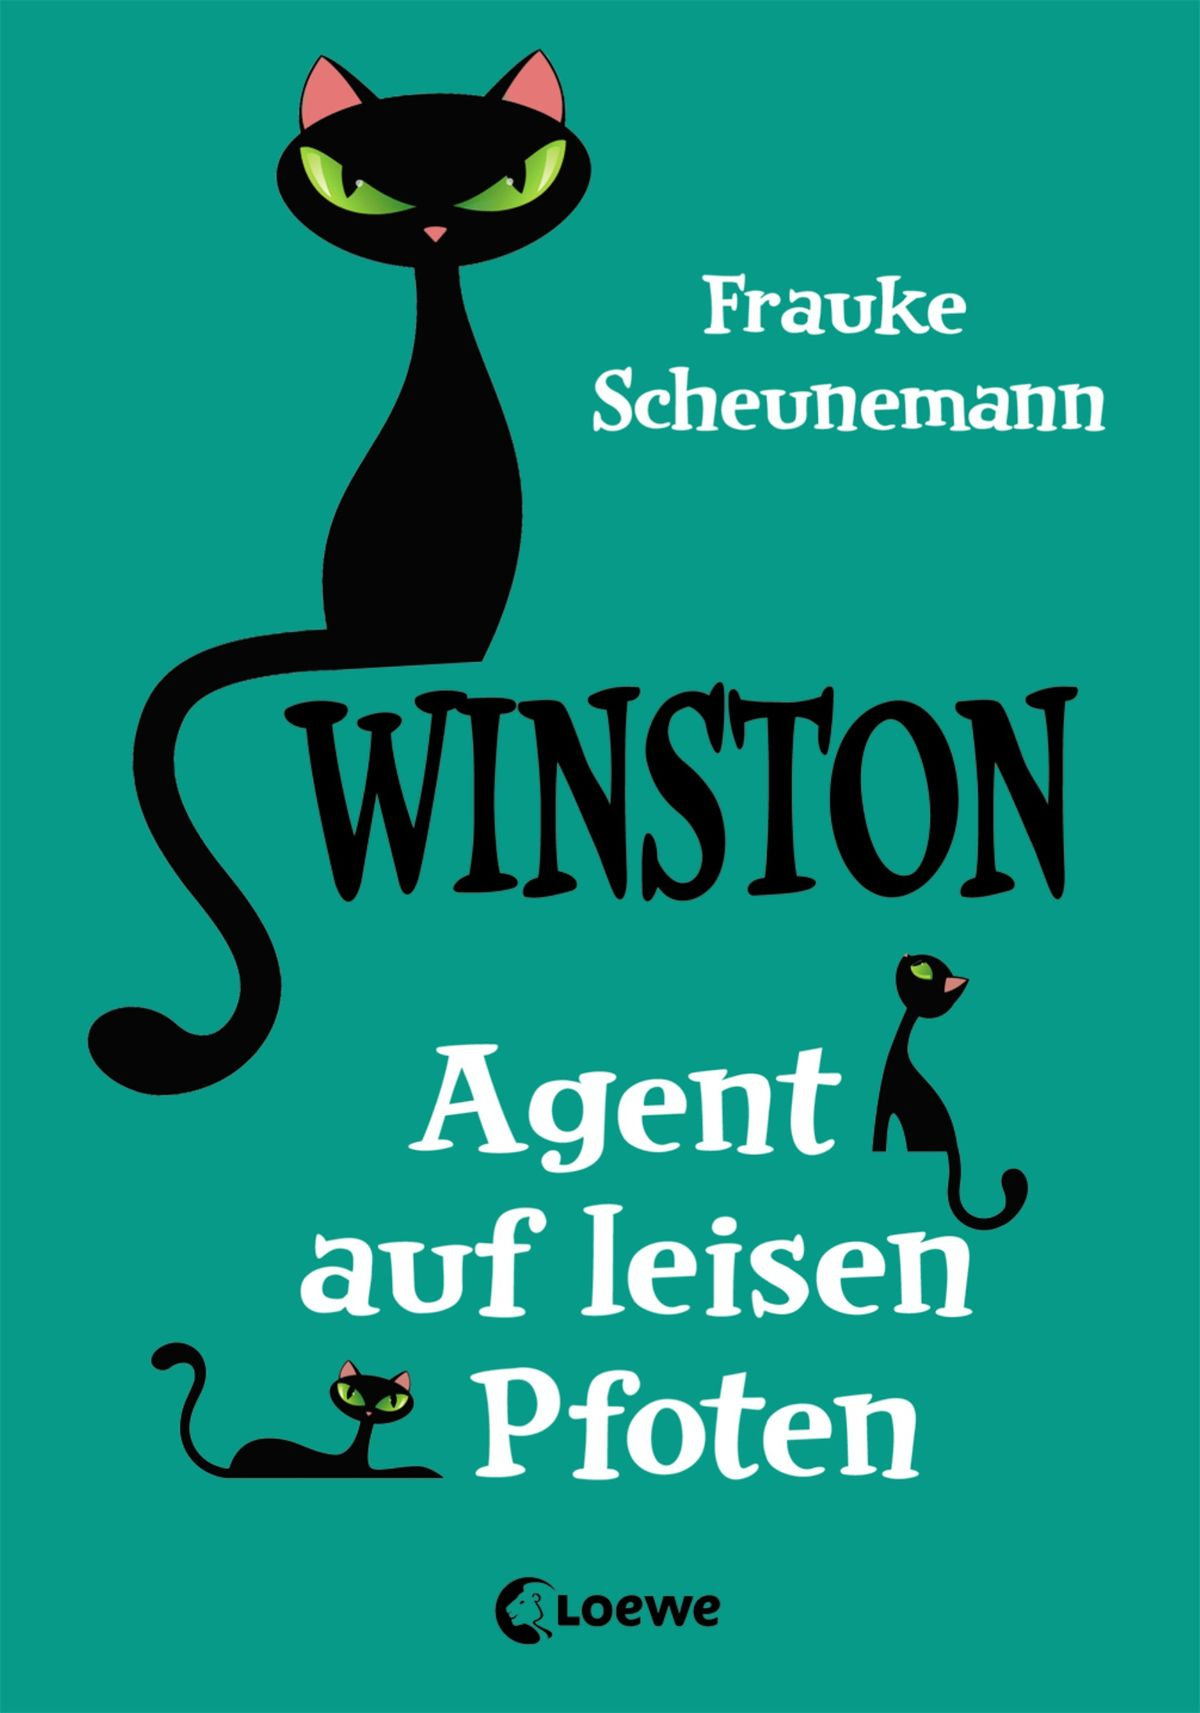 Winston – Agent on Silent Paws (Frauke Scheunemann, 2020)